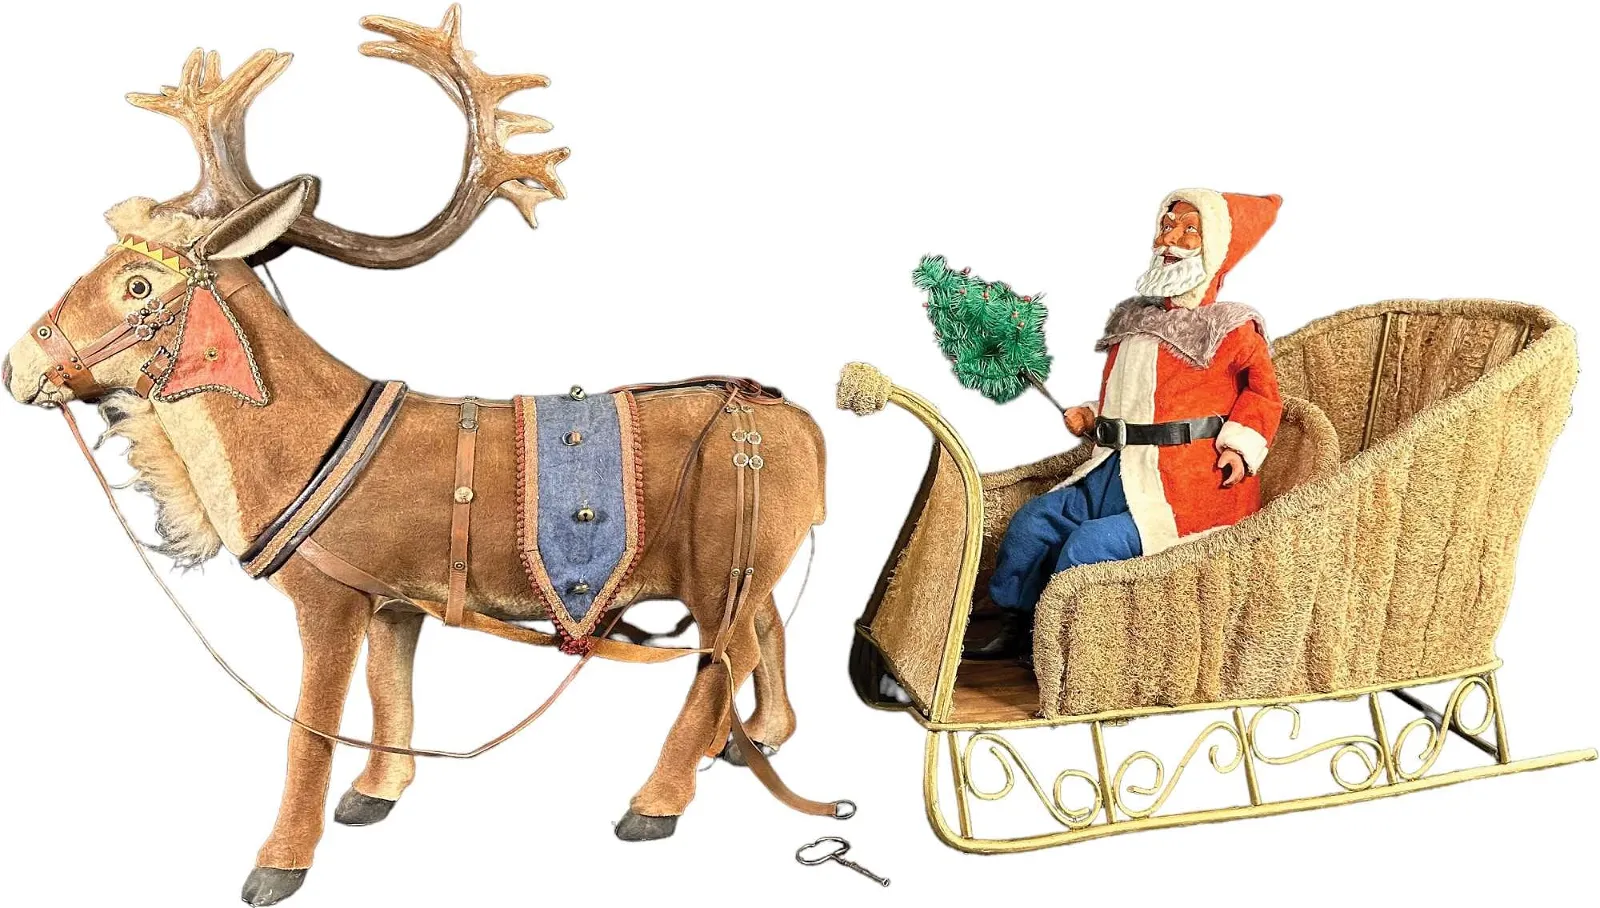 Huge Clockwork Santa In Moss Sleigh with Reindeer, $12,000-$18,000 at Bertoia Auctions.